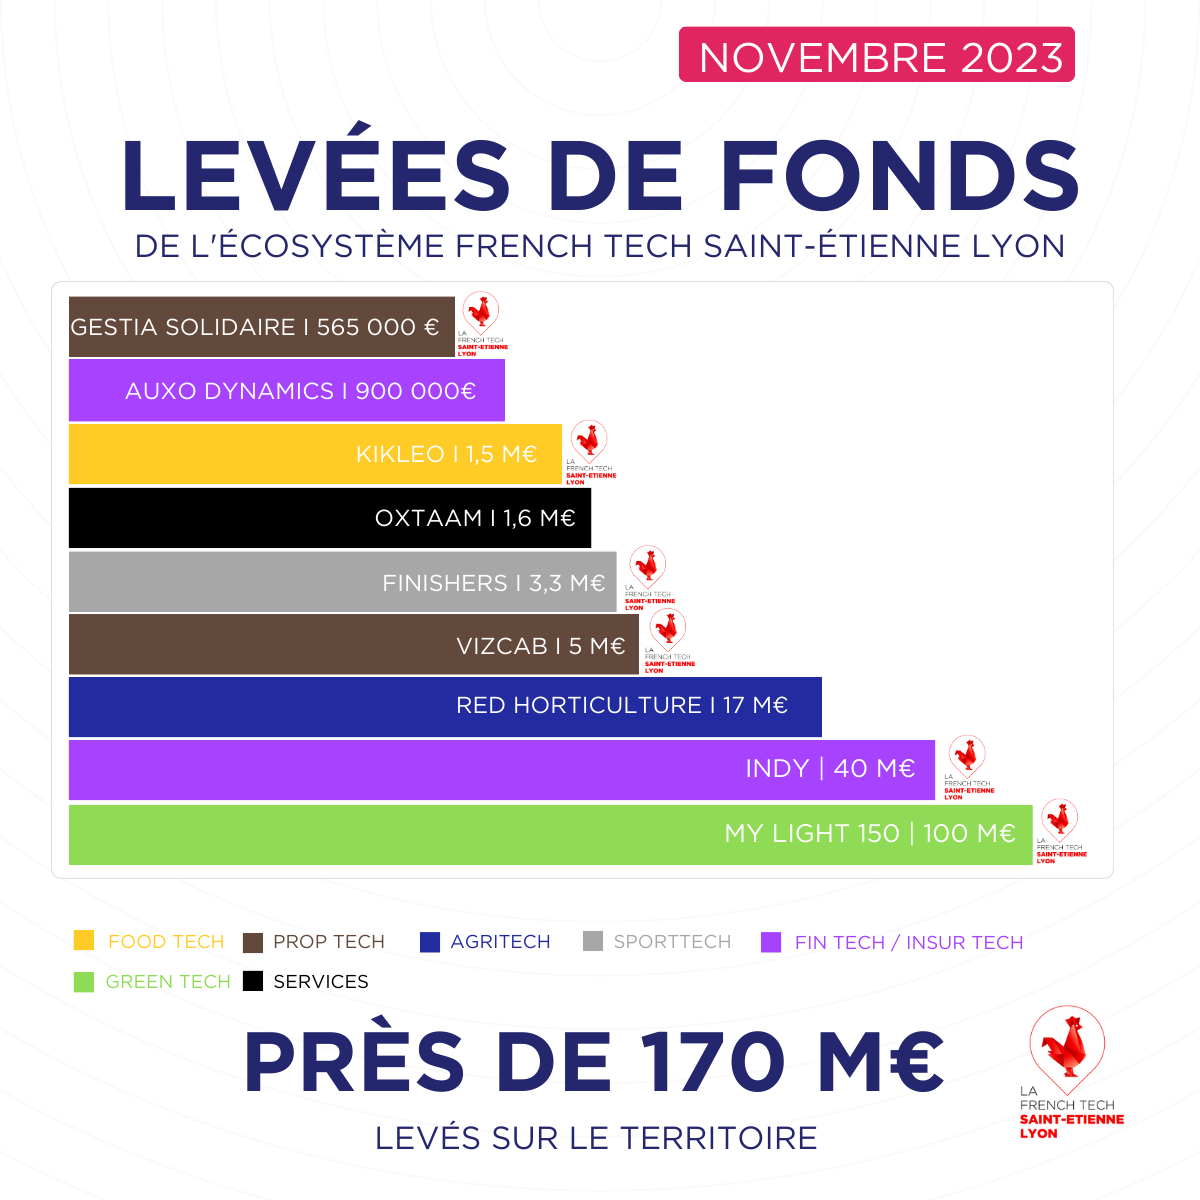 Saint-Etienne Lyon : 170 M€ levés en novembre 2023